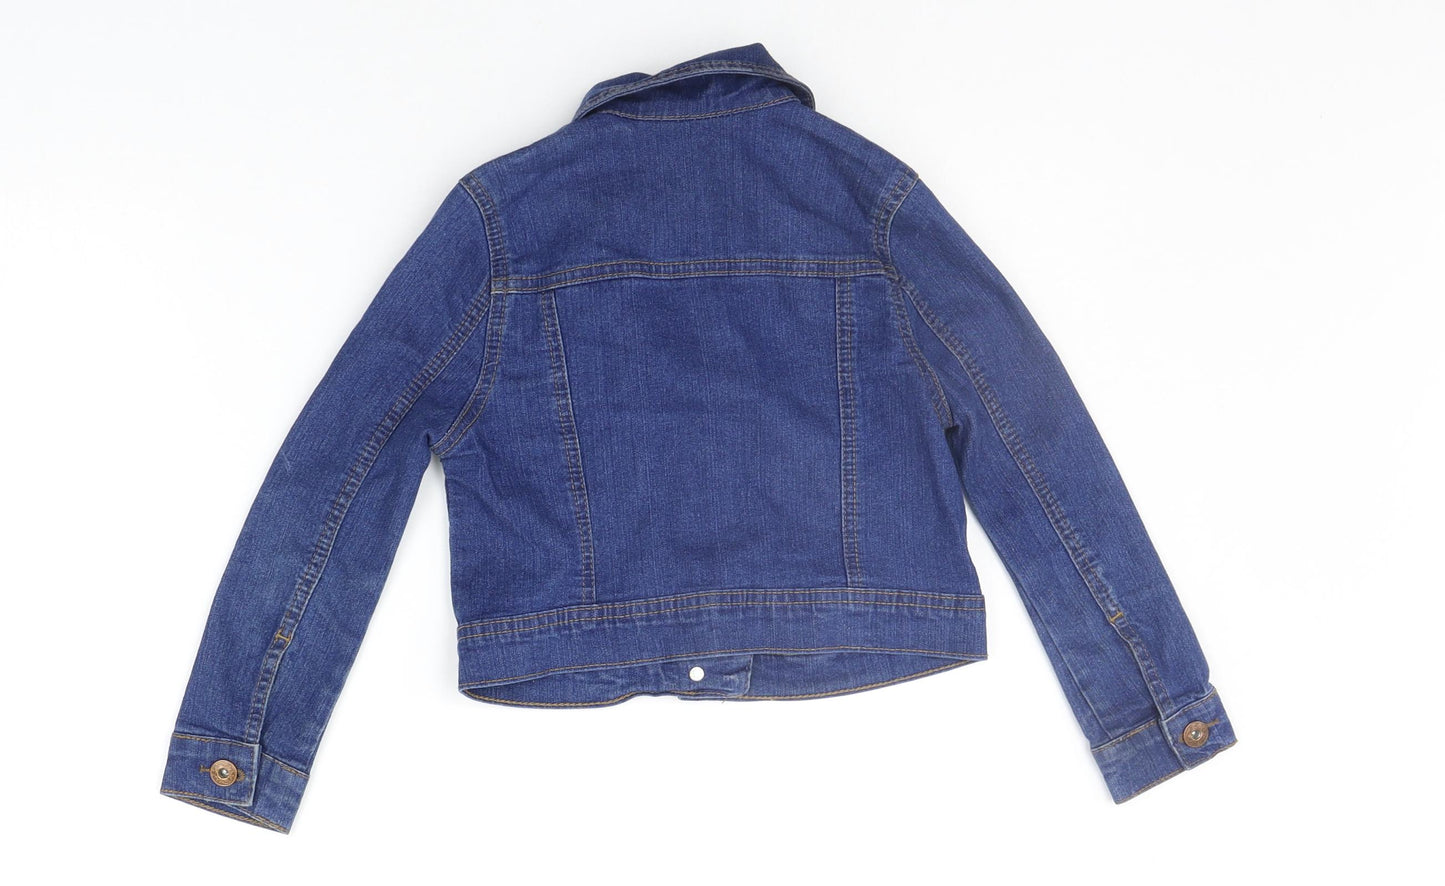 George Girls Blue   Jacket Coat Size 4-5 Years